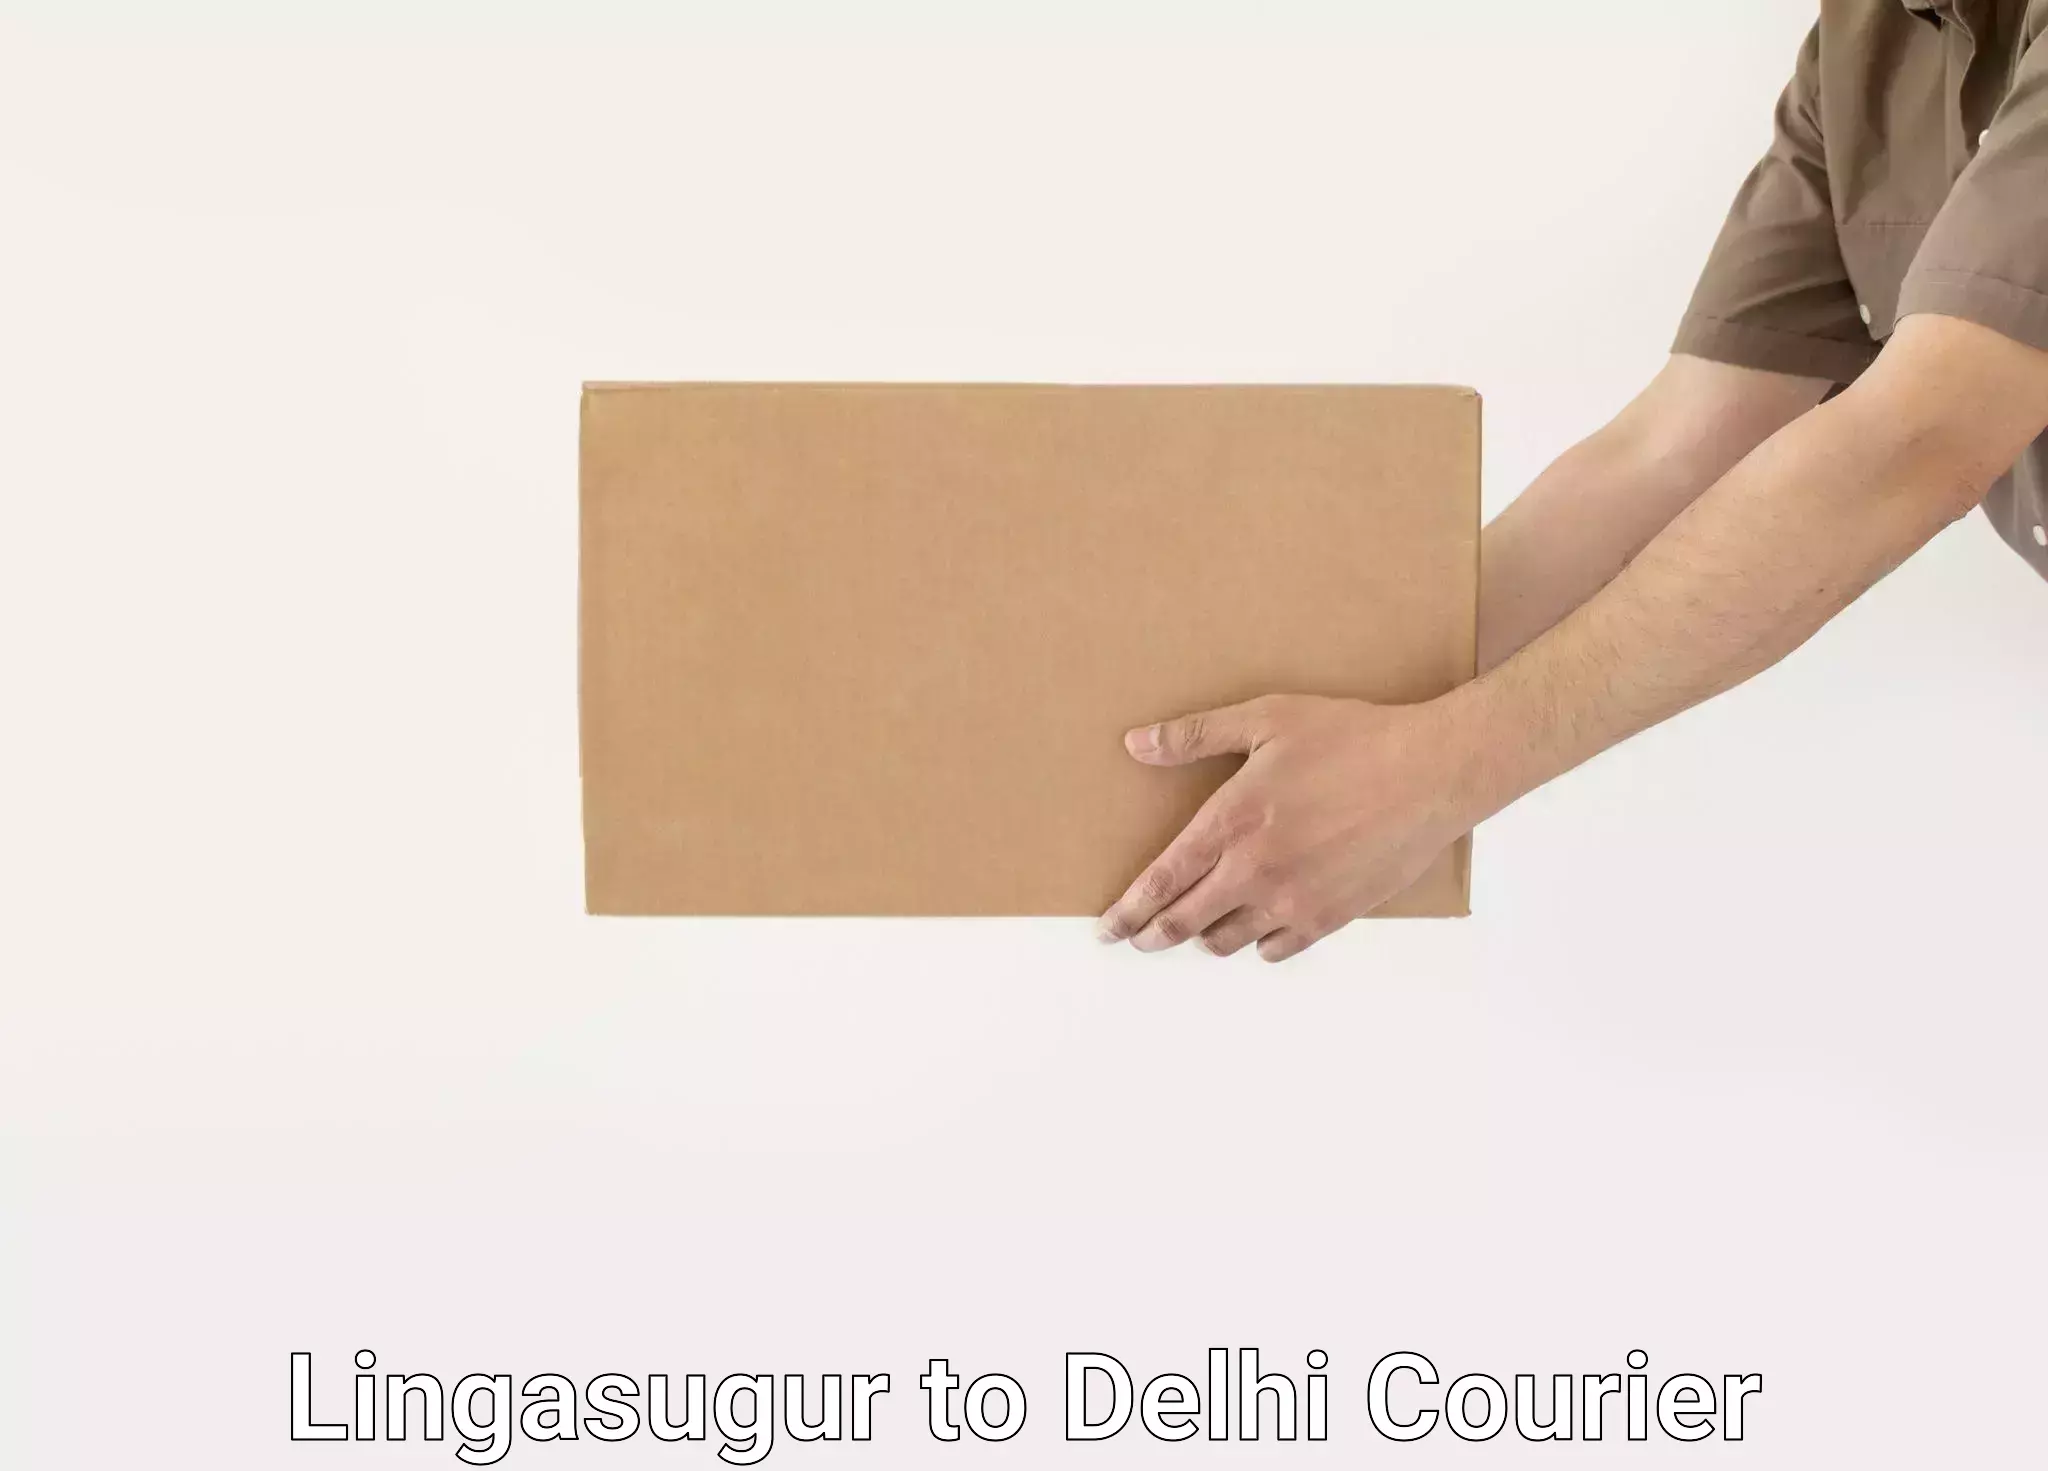 Efficient relocation services Lingasugur to Delhi